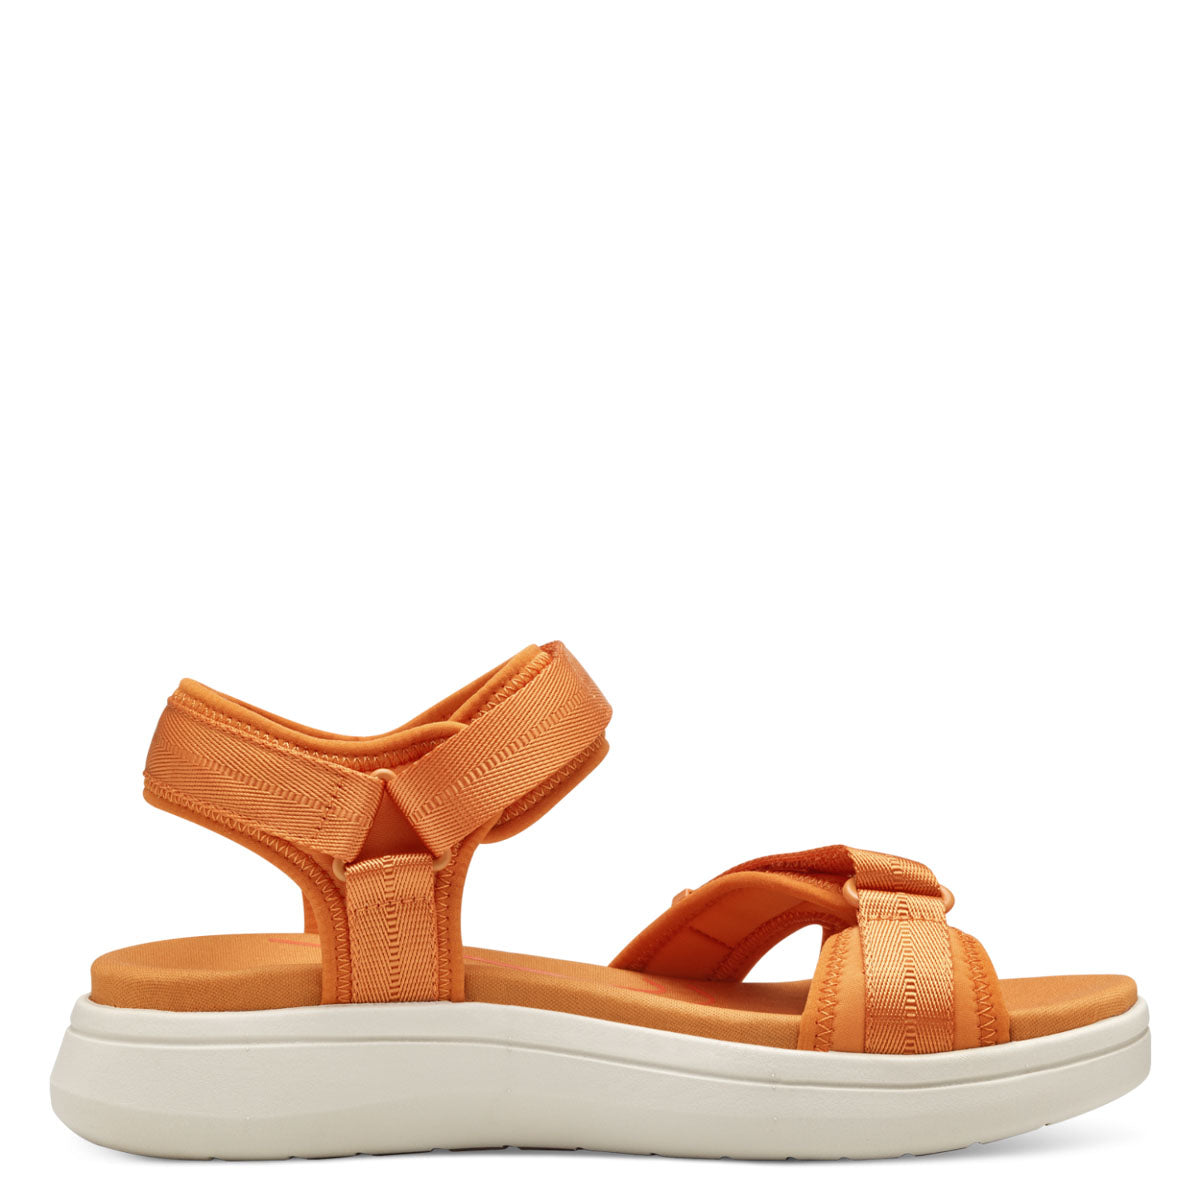 Tamaris Orange Wedge Sandal with Adjustable Straps